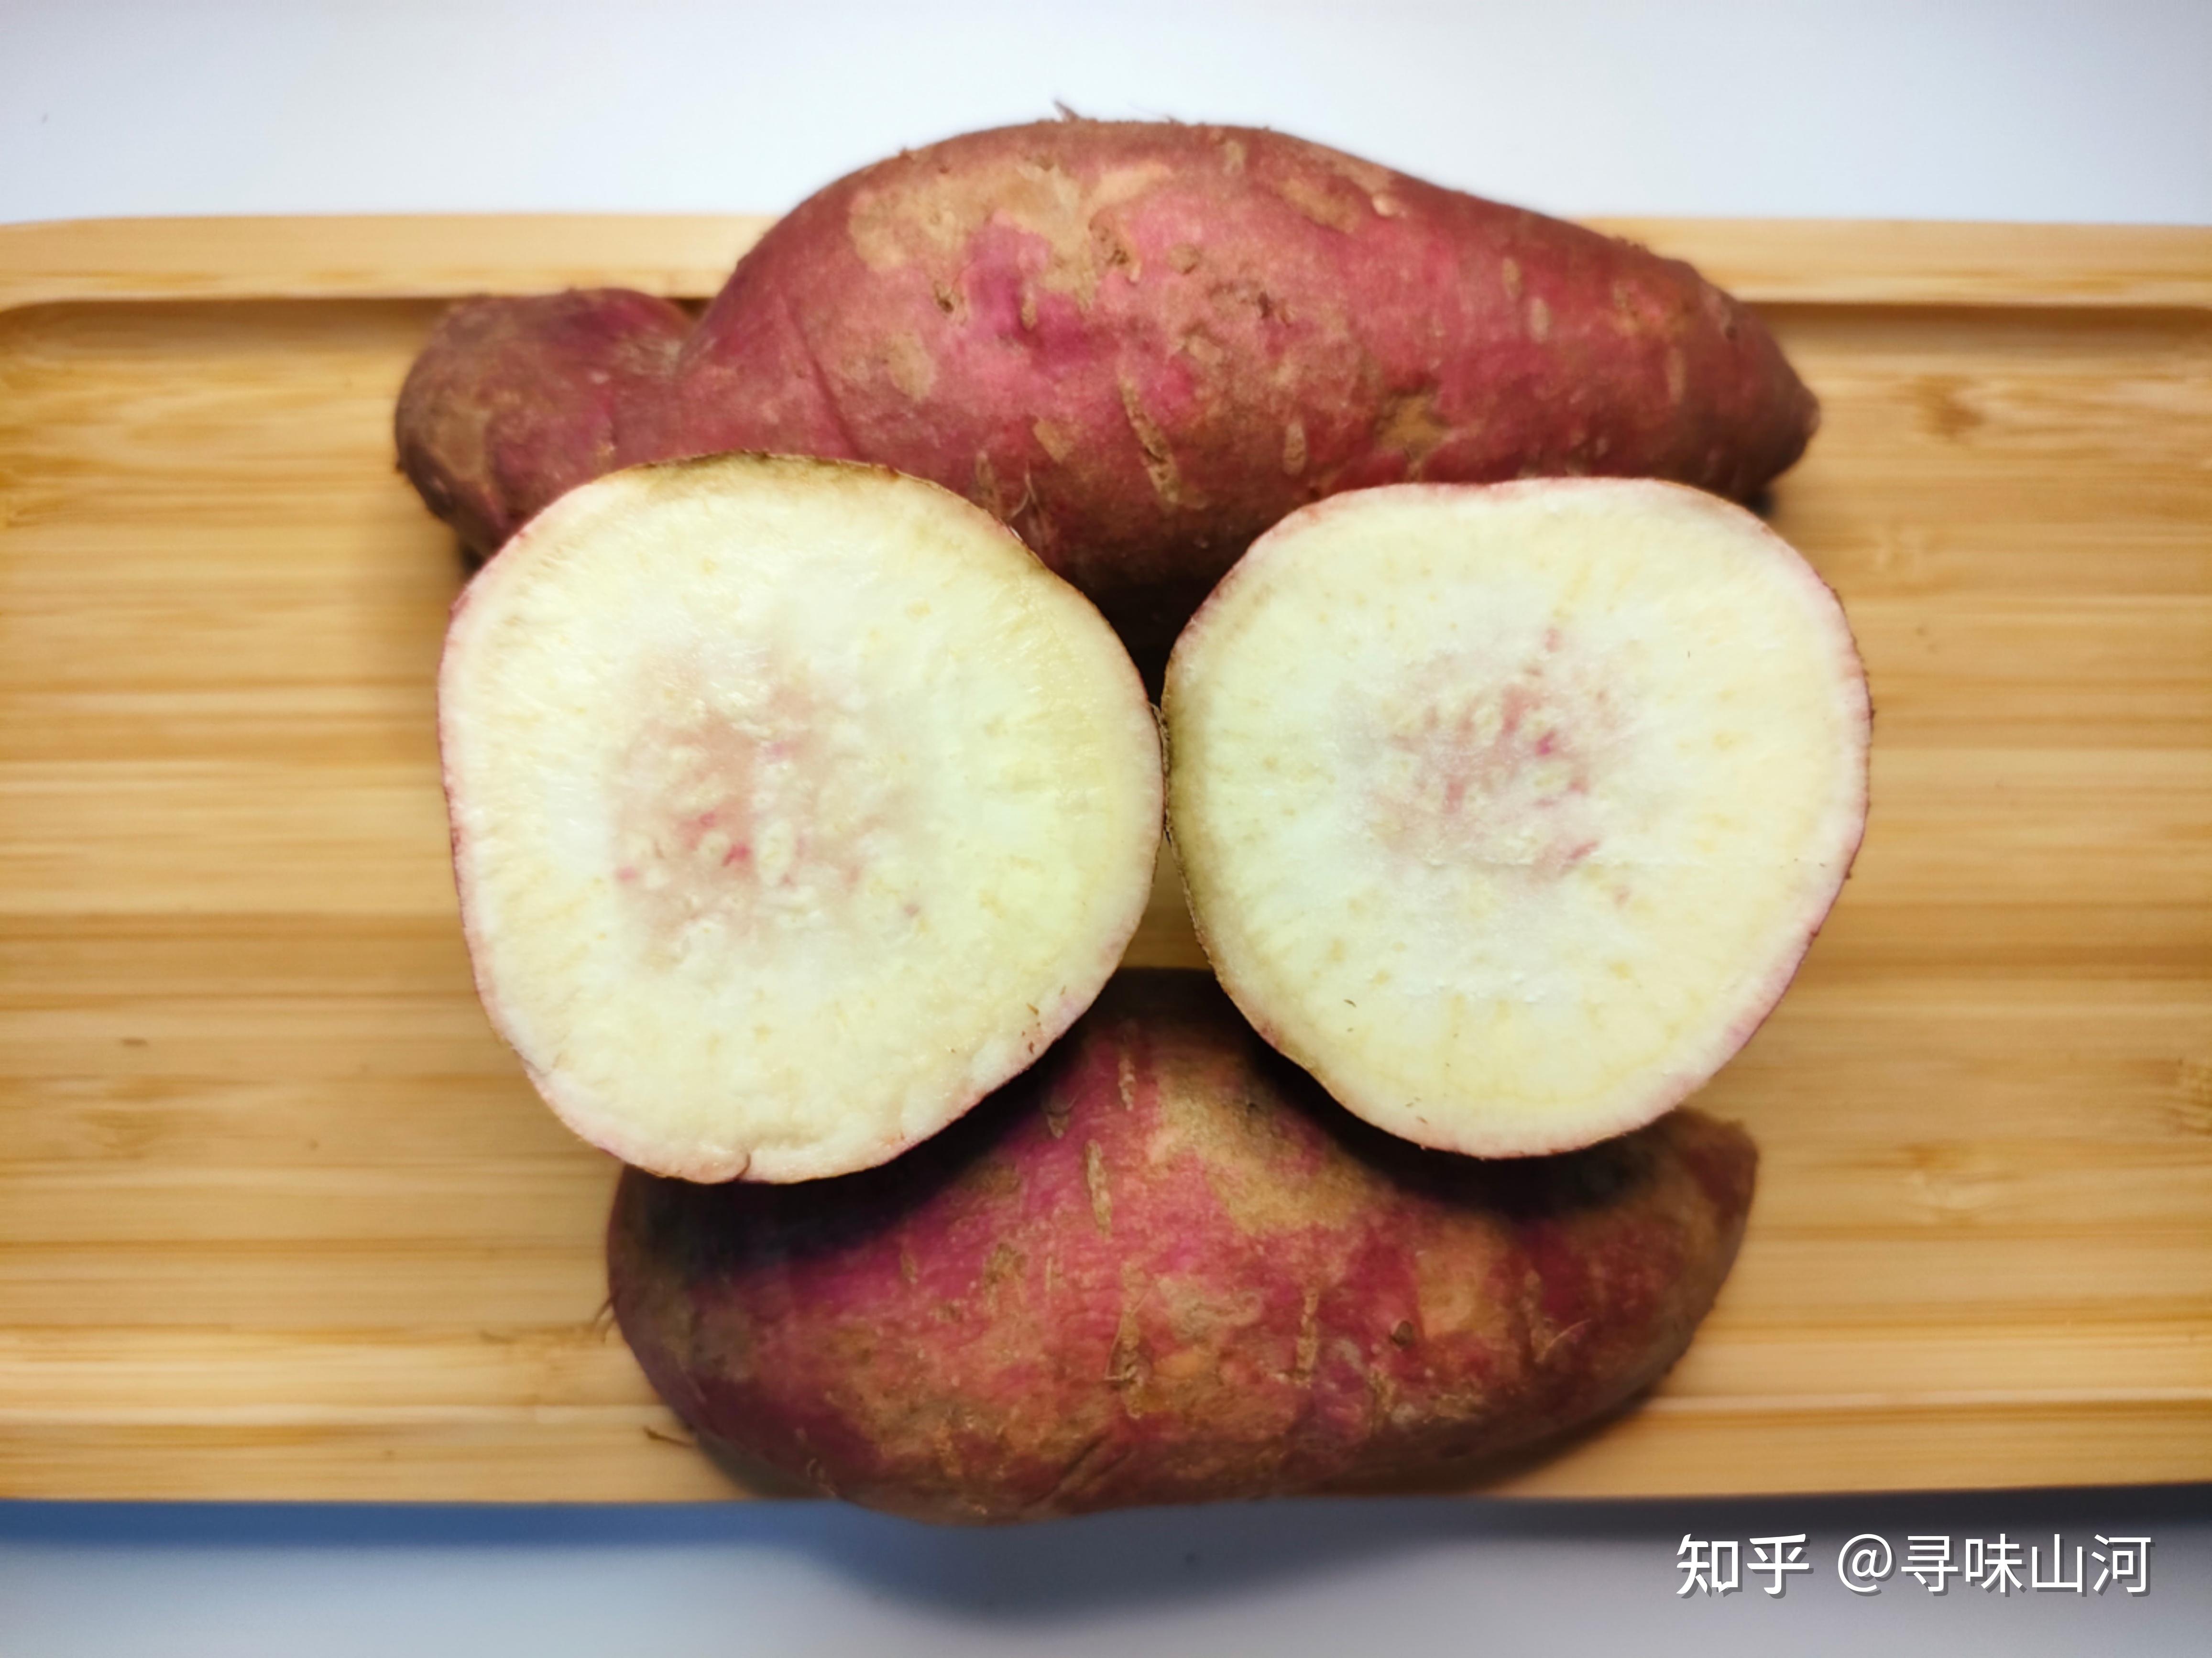 白心红薯,红皮白心的红薯品种,红皮白心红薯介绍_大山谷图库